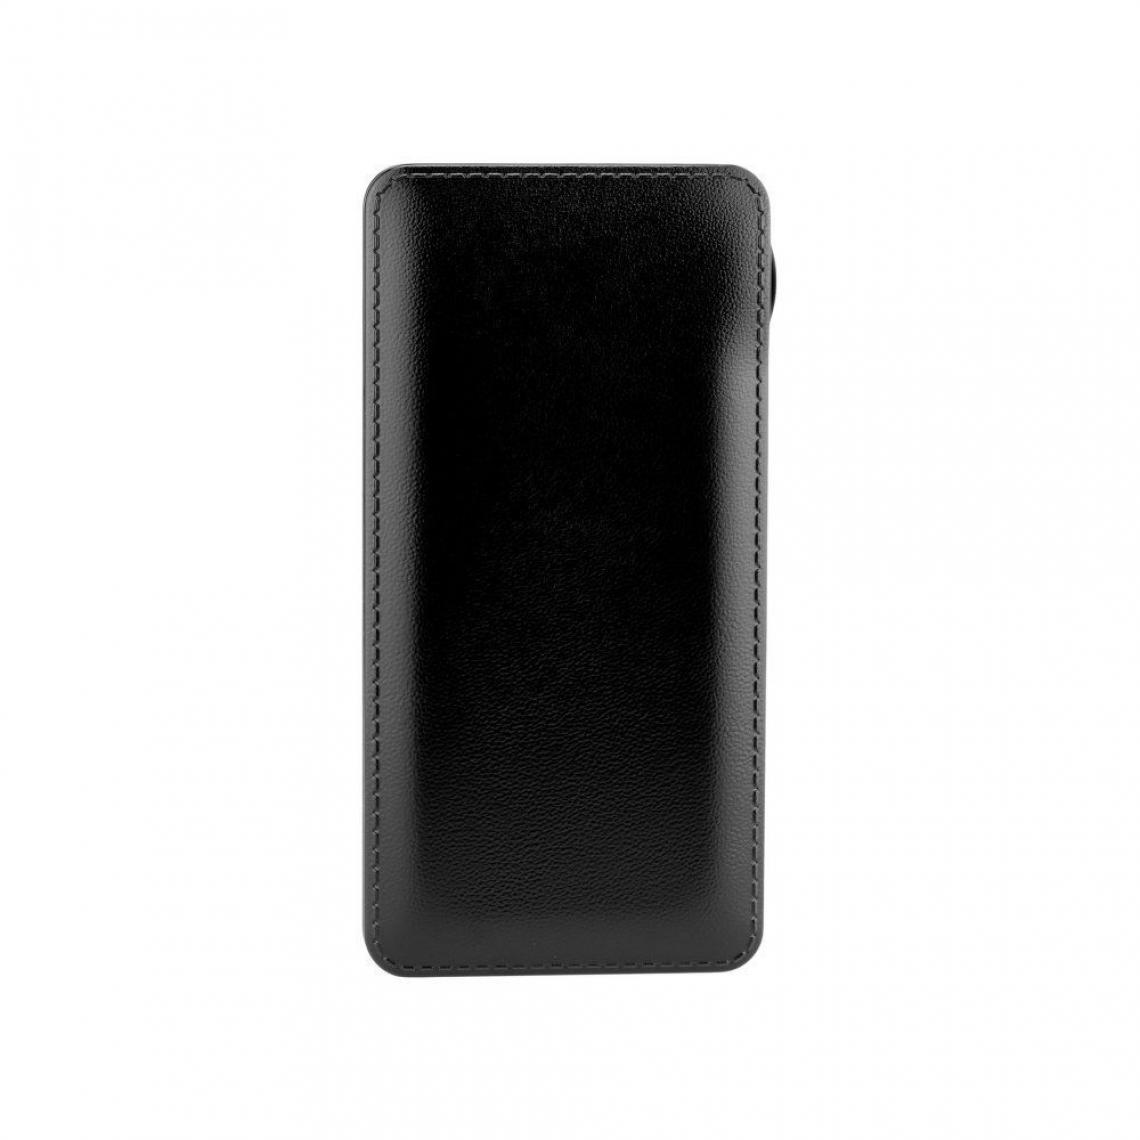 Ozzzo - Chargeur batterie externe 20000 mAh powerbank ozzzo noir pour LG Q Stylus+ - Autres accessoires smartphone